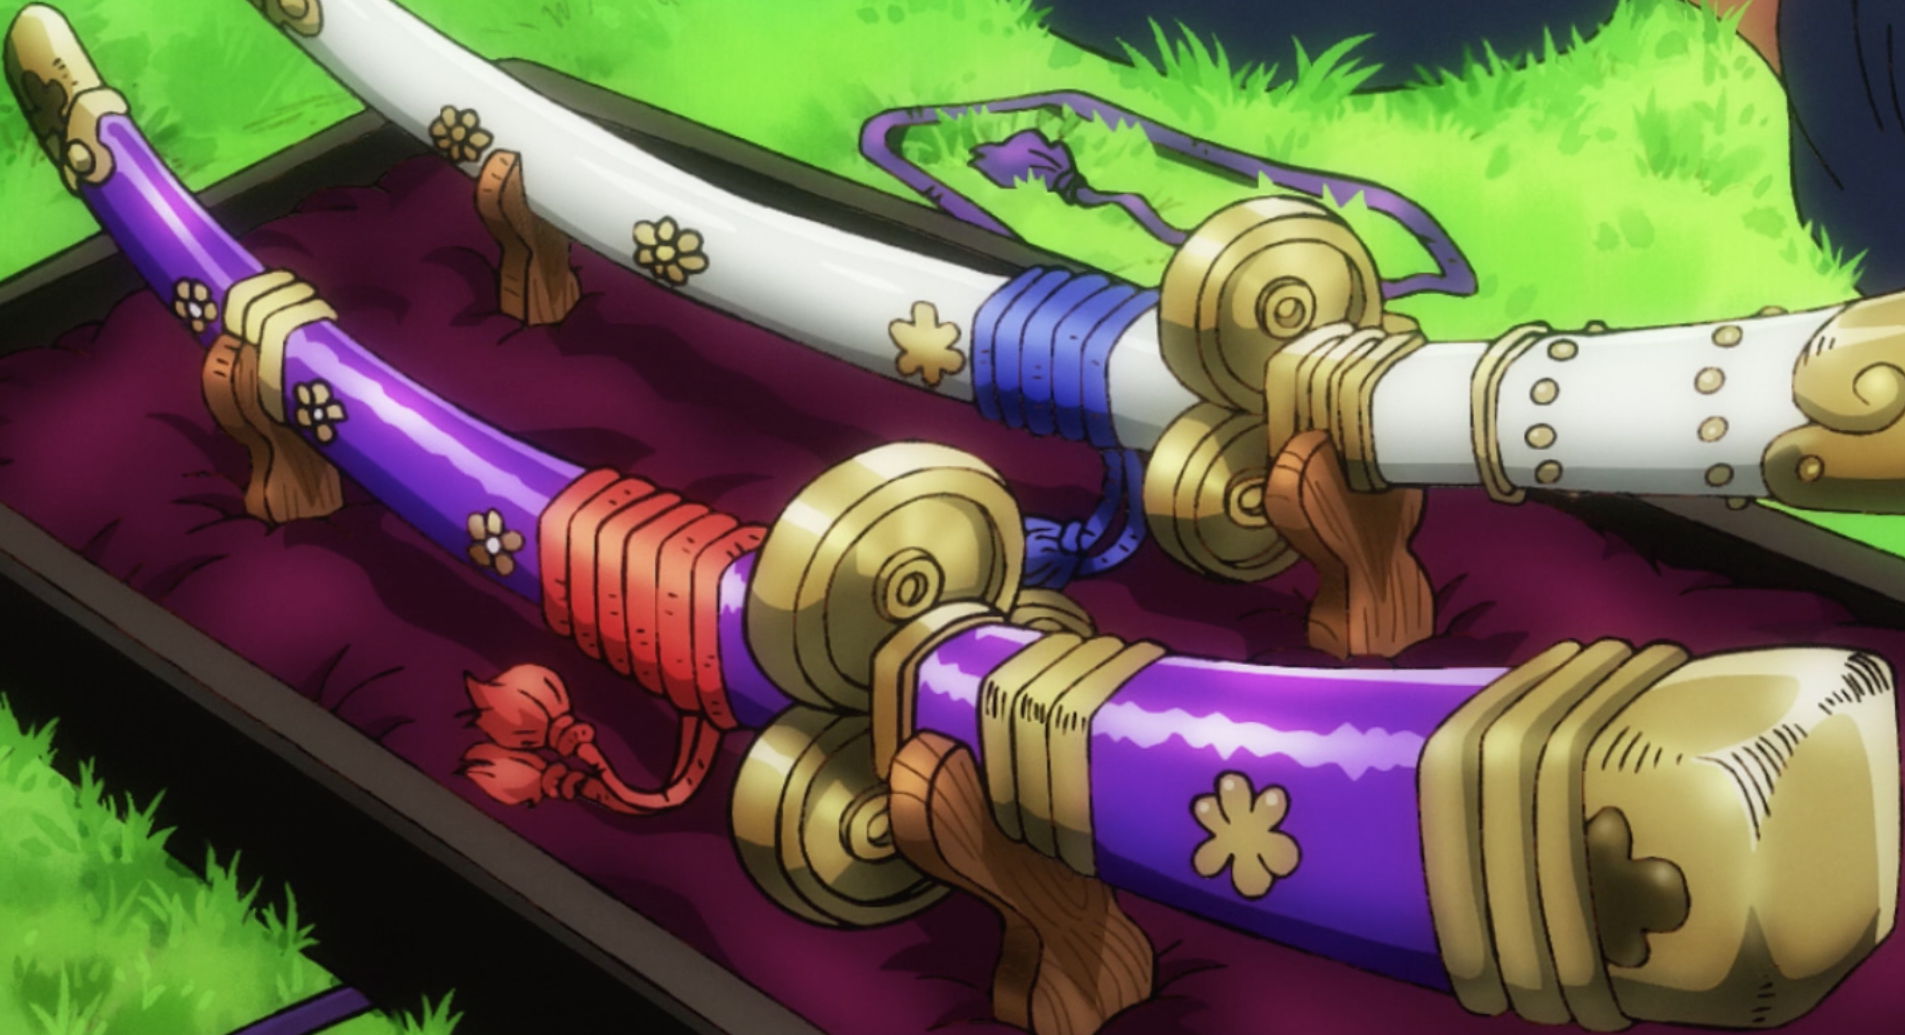 One Piece Roronoa Zoro Enma legendary Sword